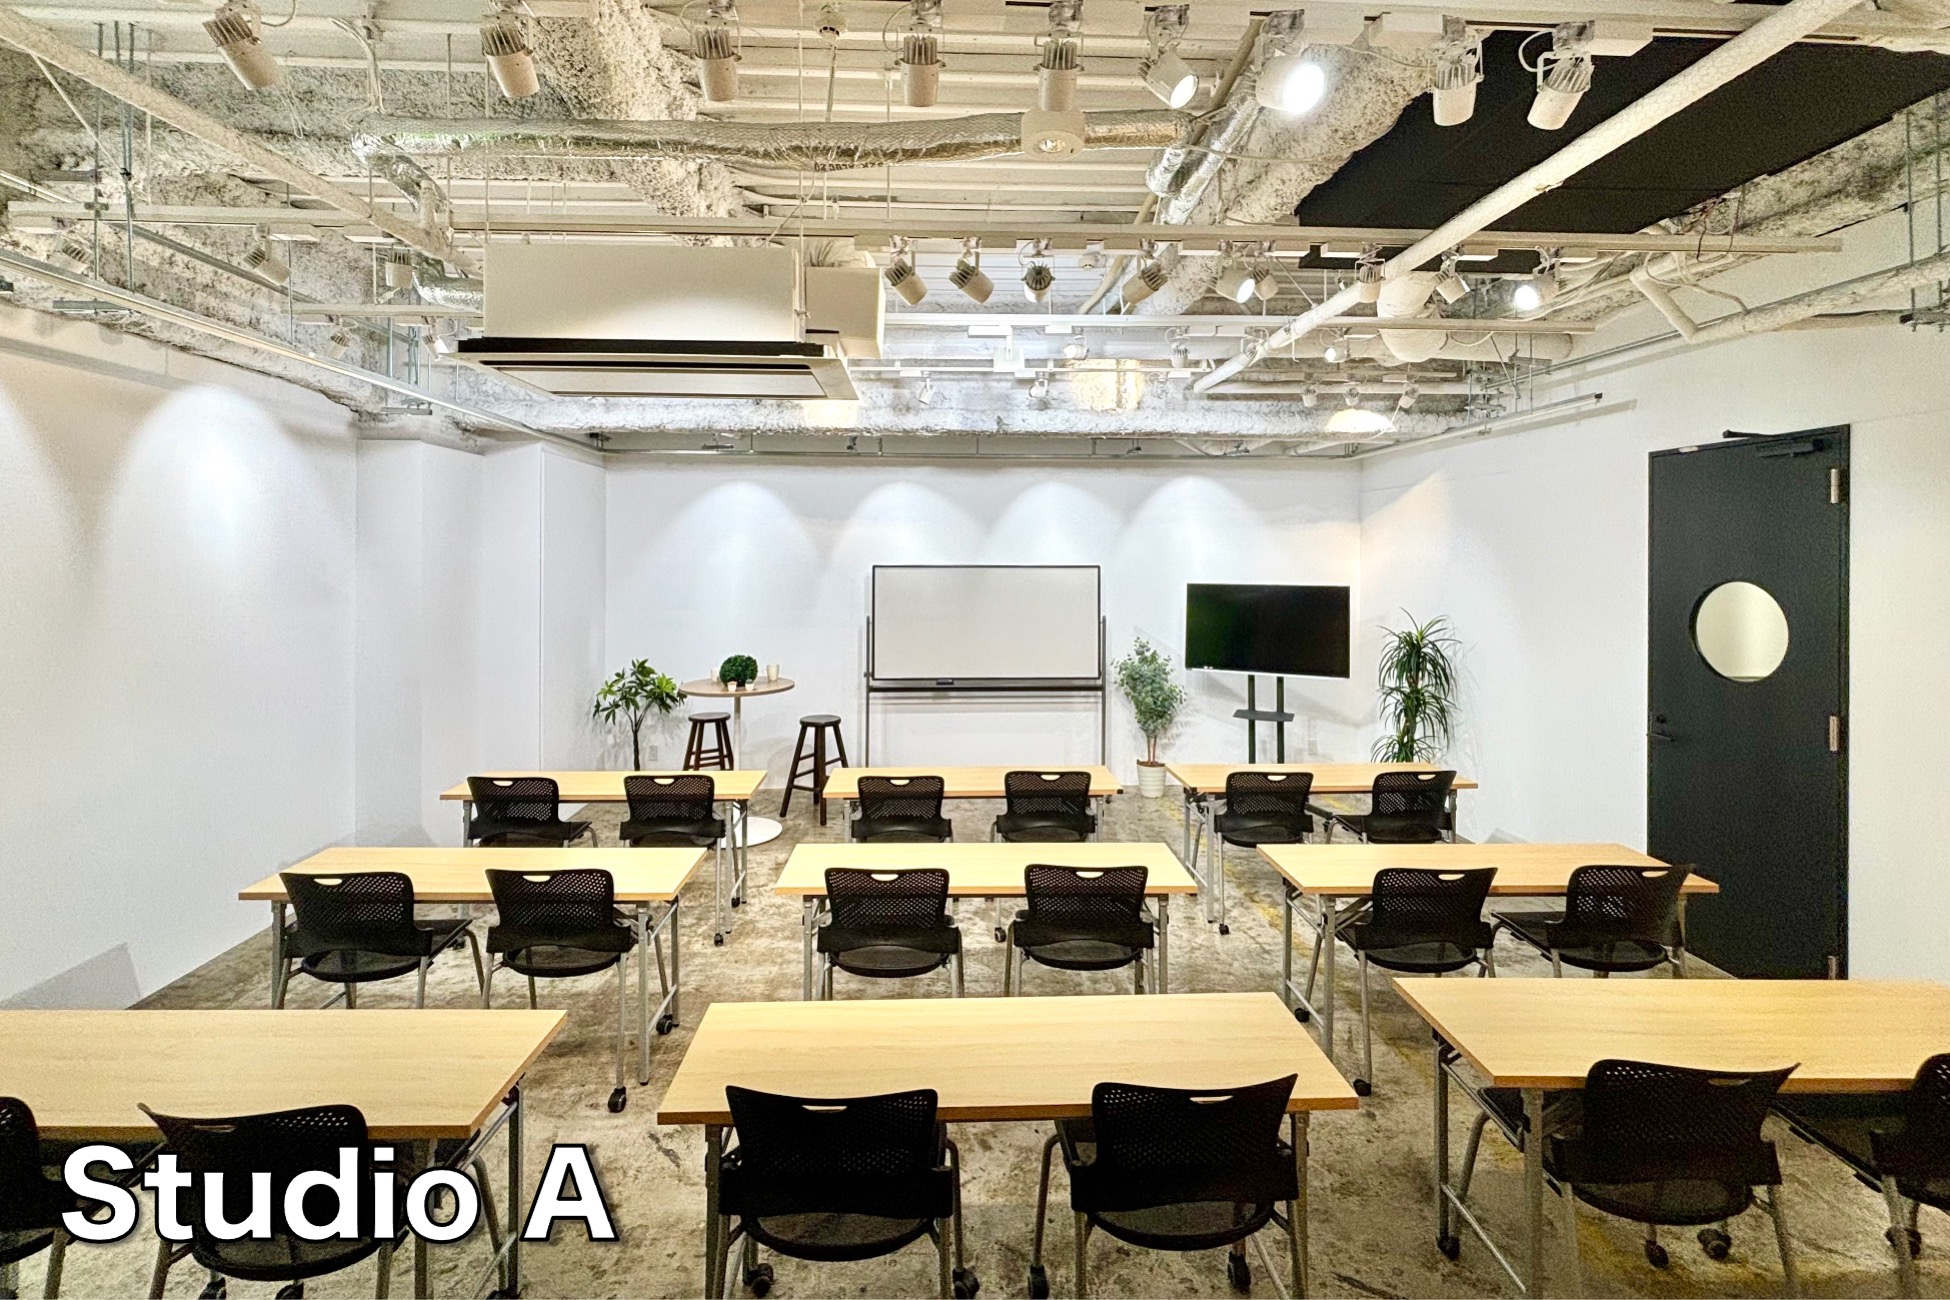 StudioAの画像 - 有観客の講義やオーディション会場としても利用可能です。グリーンバックを使用したクロマキー合成撮影も可能です。